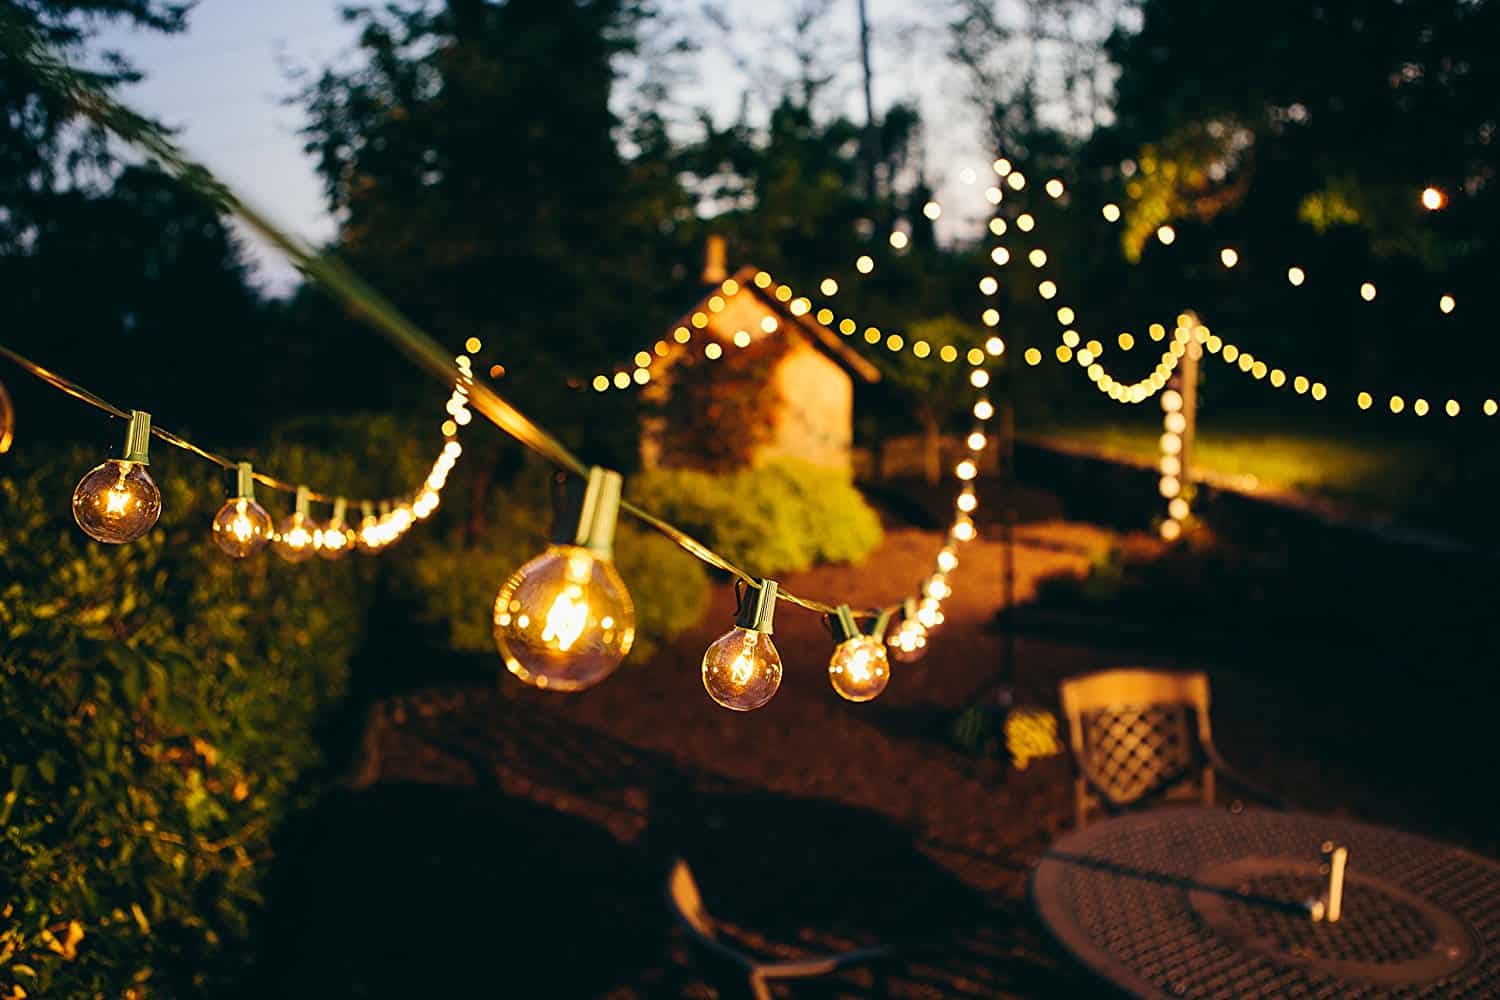 Đèn LED trang trí quán cafe sân vườn đã trở thành một xu hướng được yêu thích bởi các tín đồ thưởng thức cà phê. Với ánh sáng ấm áp và màu sắc đa dạng, chúng sẽ mang đến cho quán của bạn một không gian sống động và đầy phong cách. Hãy khám phá ngay ảnh về đèn LED trang trí quán cafe sân vườn và trải nghiệm cảm giác uống cà phê trong không gian thưởng thức mang phong cách mới mẻ của mình.